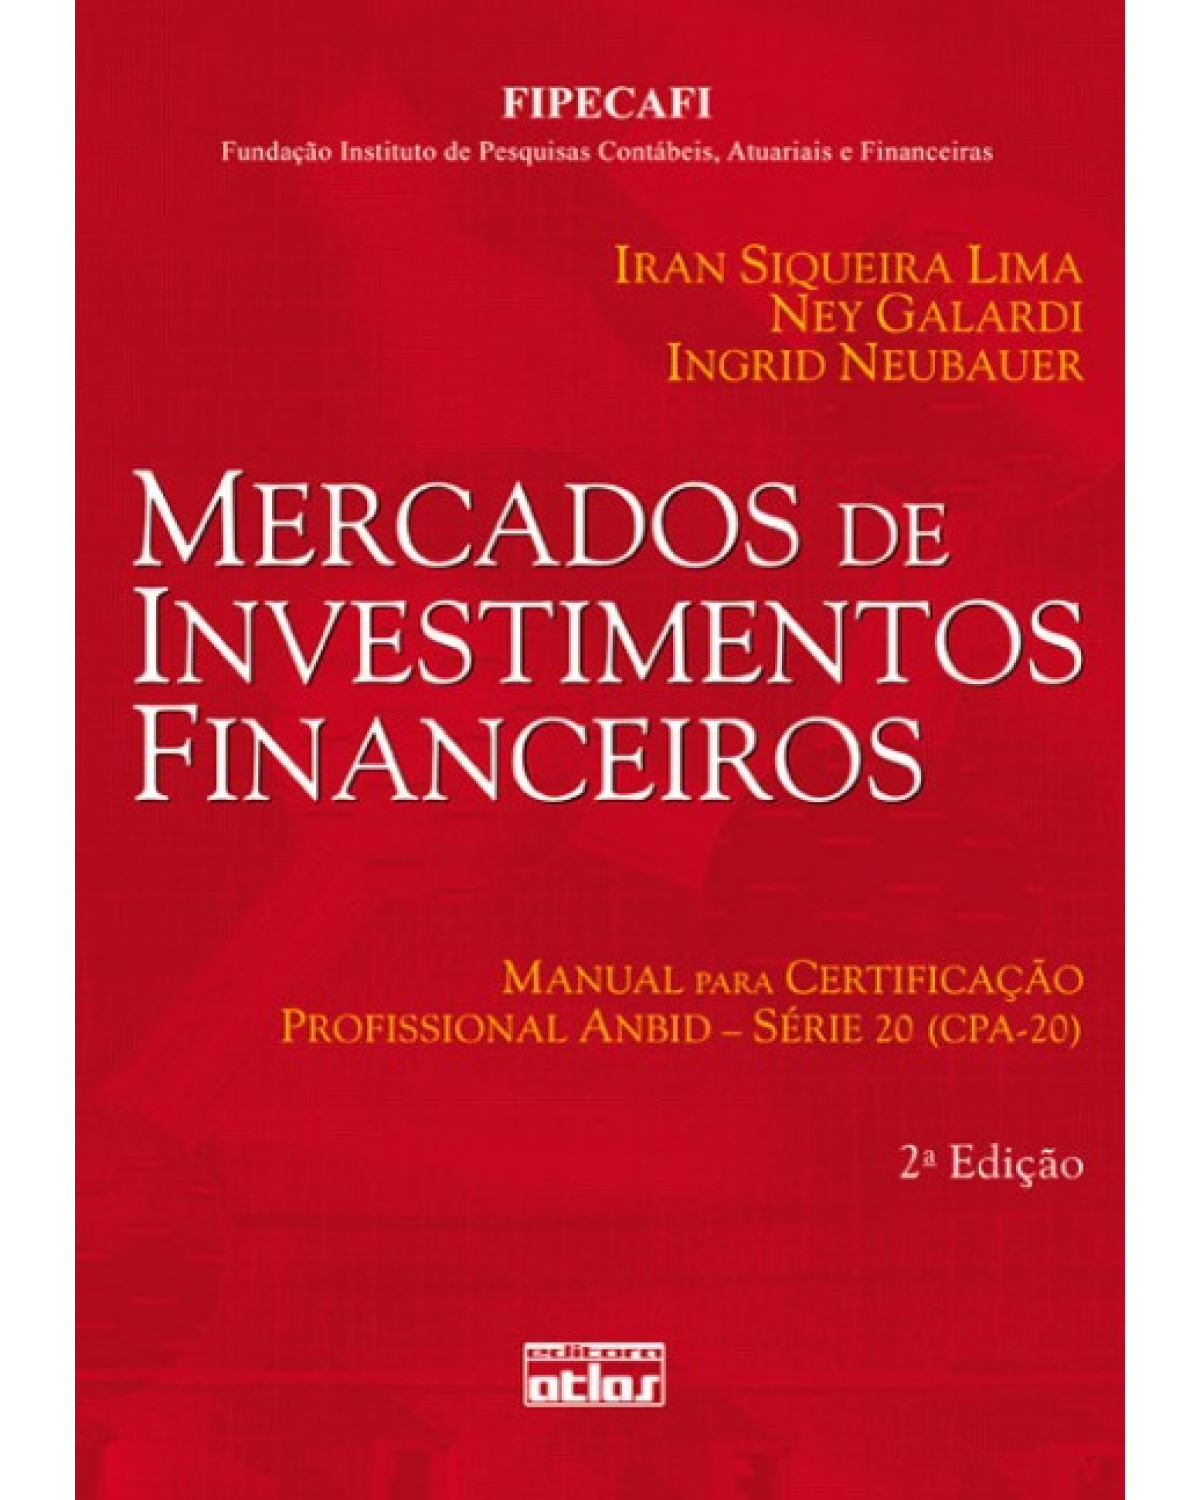 Mercados de investimentos financeiros - Manual para certificação profissional ANBID - Série 20 (CPA-20) - 2ª Edição | 2008